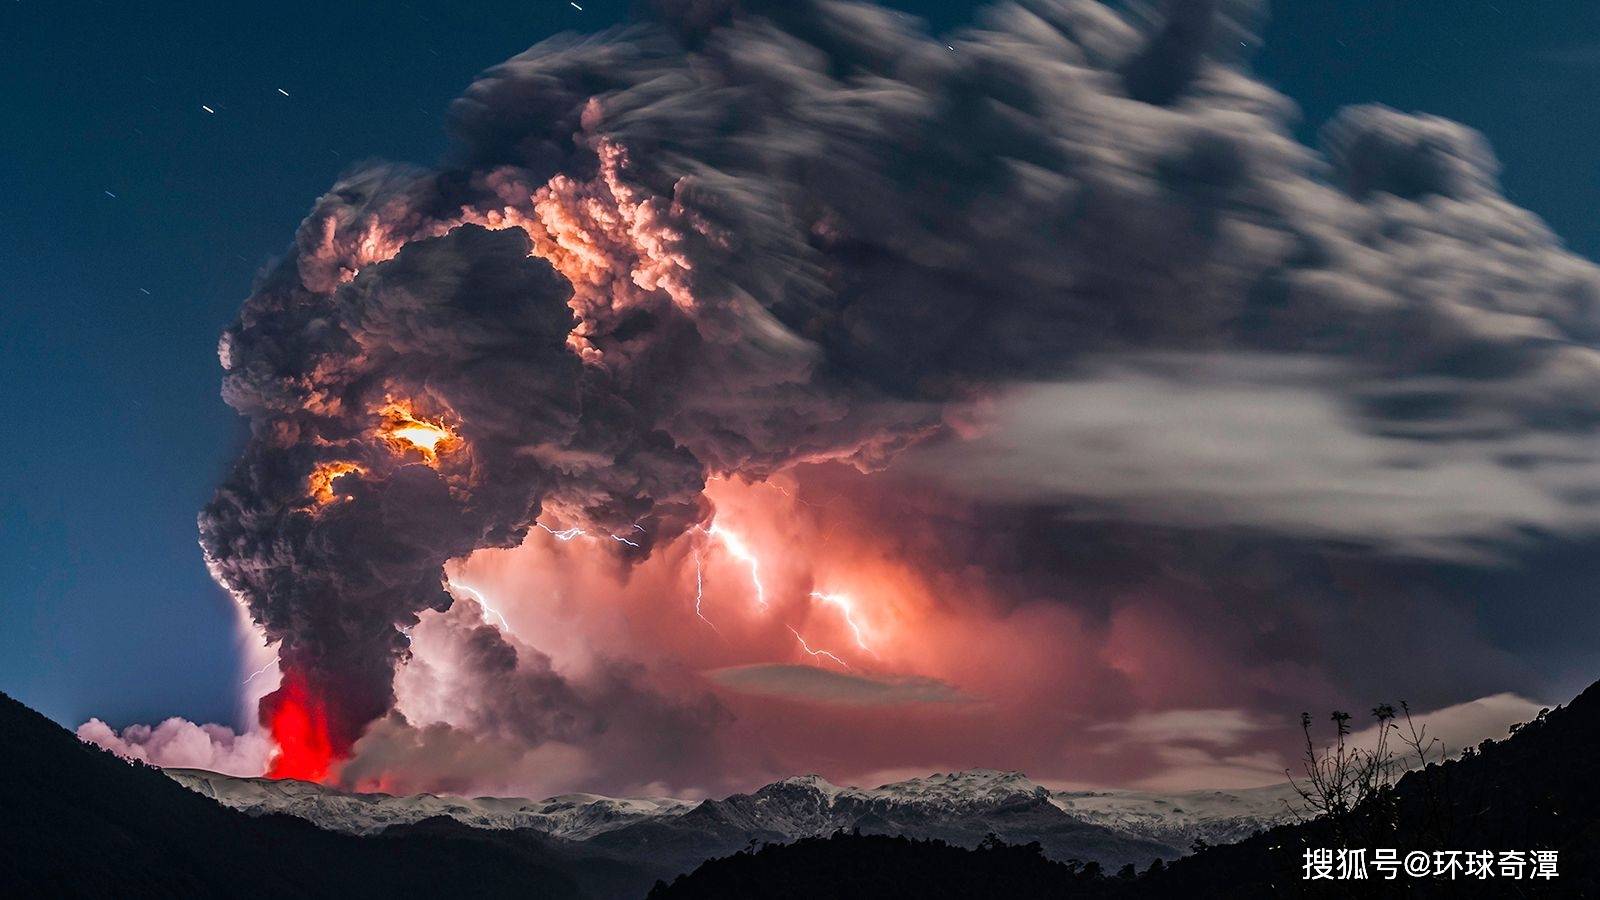 追逐火山和闪电的智利摄影师